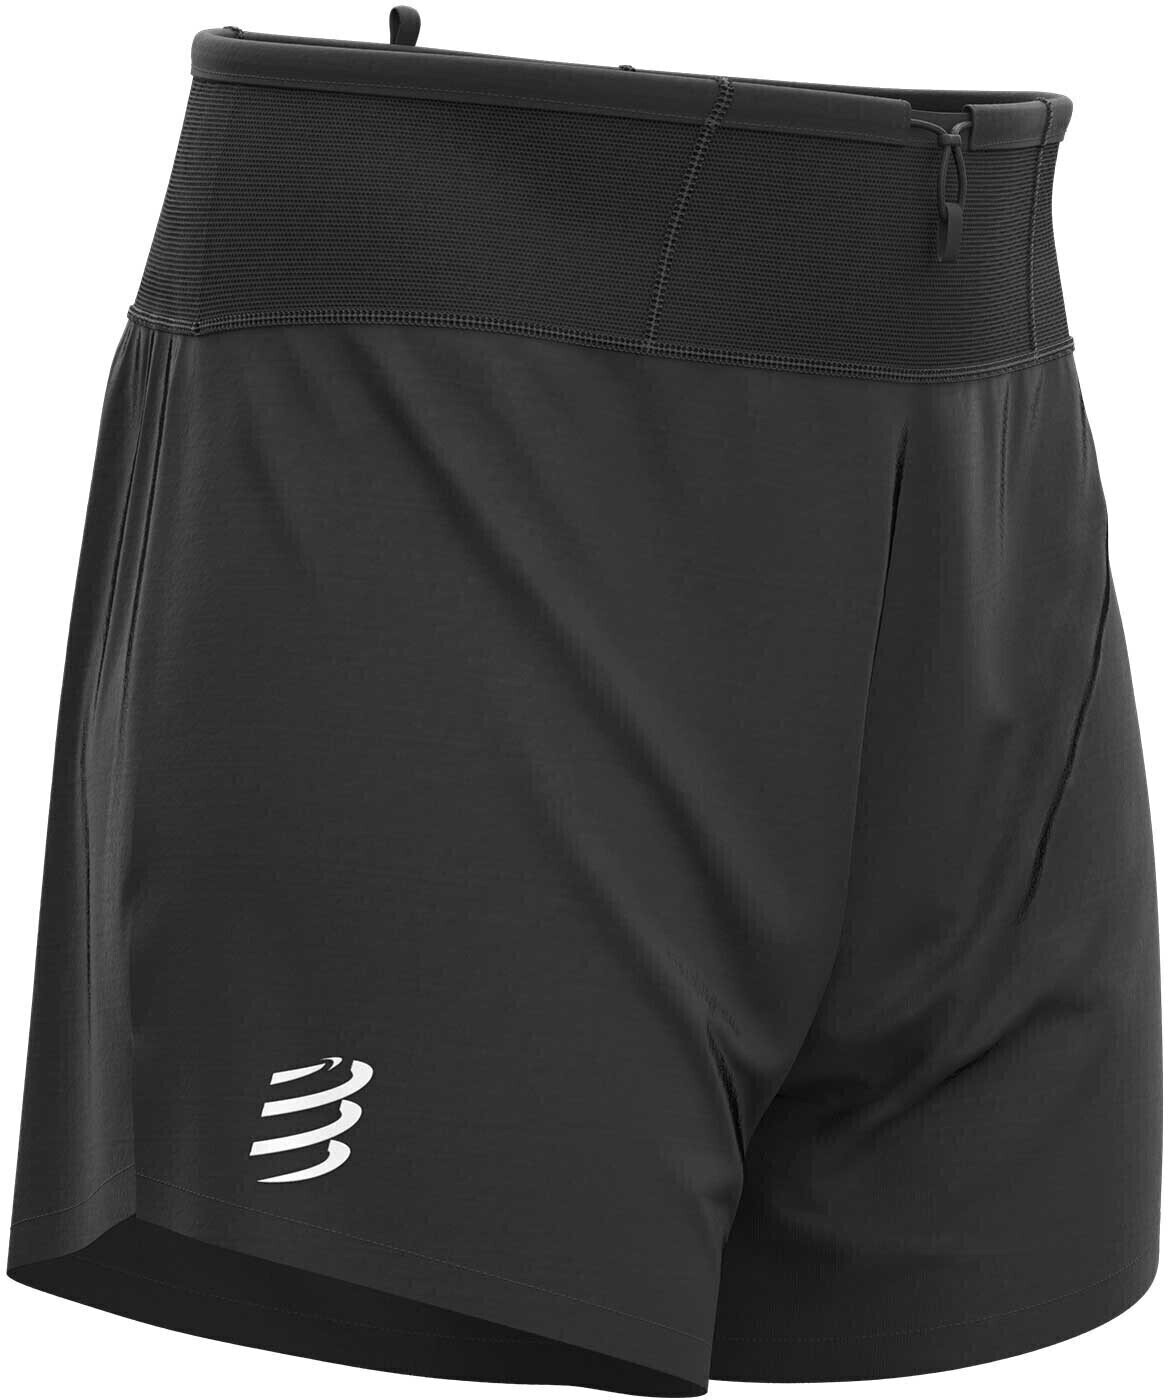 Running shorts Compressport Trail Racing Short Black XL Running shorts